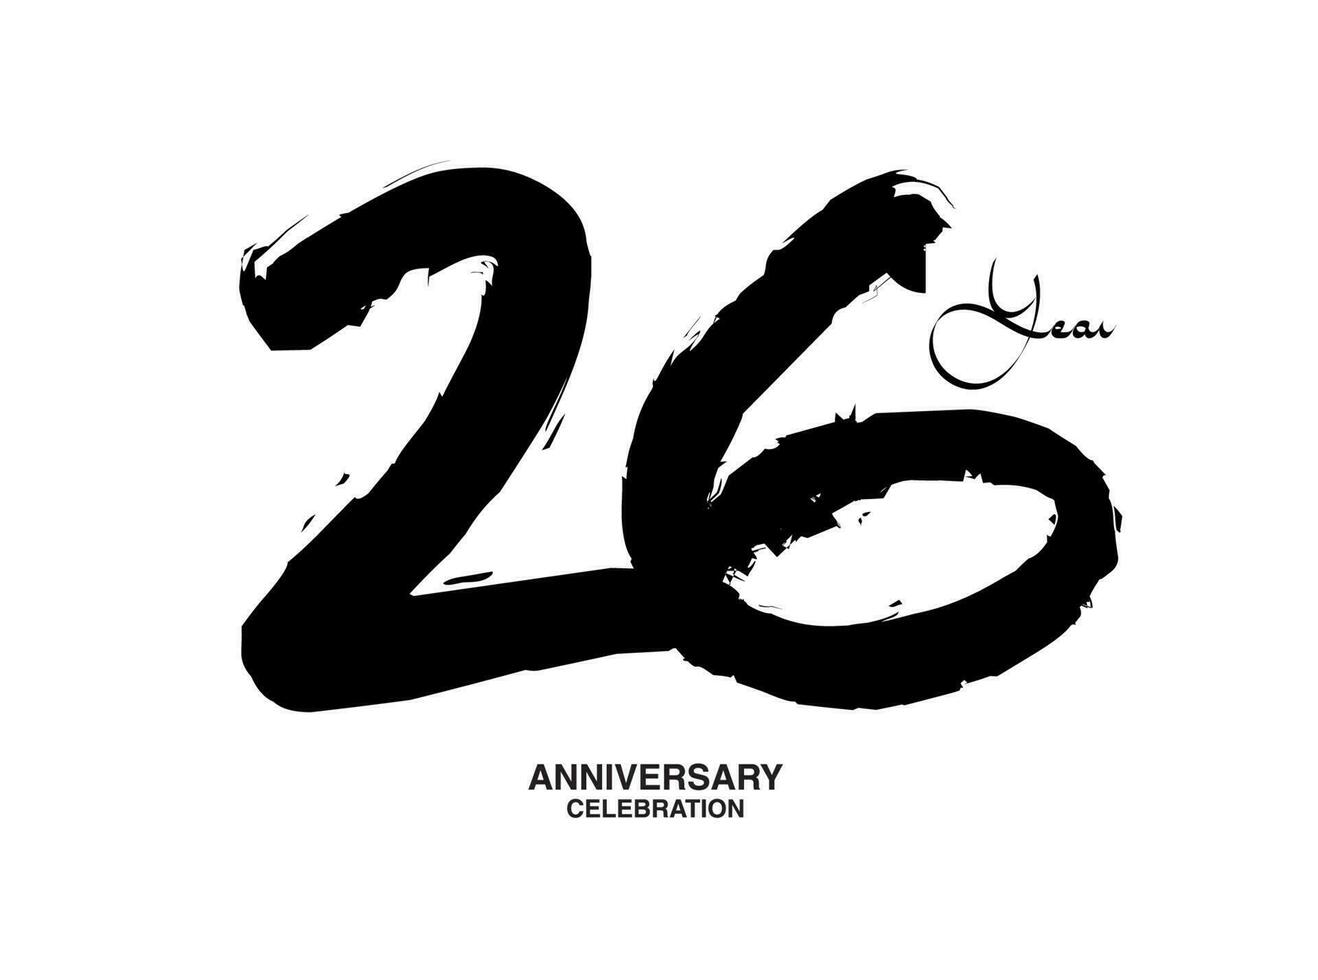 26 Jahre Jahrestag Feier Vektor Vorlage, 26 Nummer Logo Design, 26 .. Geburtstag, schwarz Beschriftung Zahlen Bürste Zeichnung Hand gezeichnet skizzieren, schwarz Nummer, Jahrestag Vektor Illustration